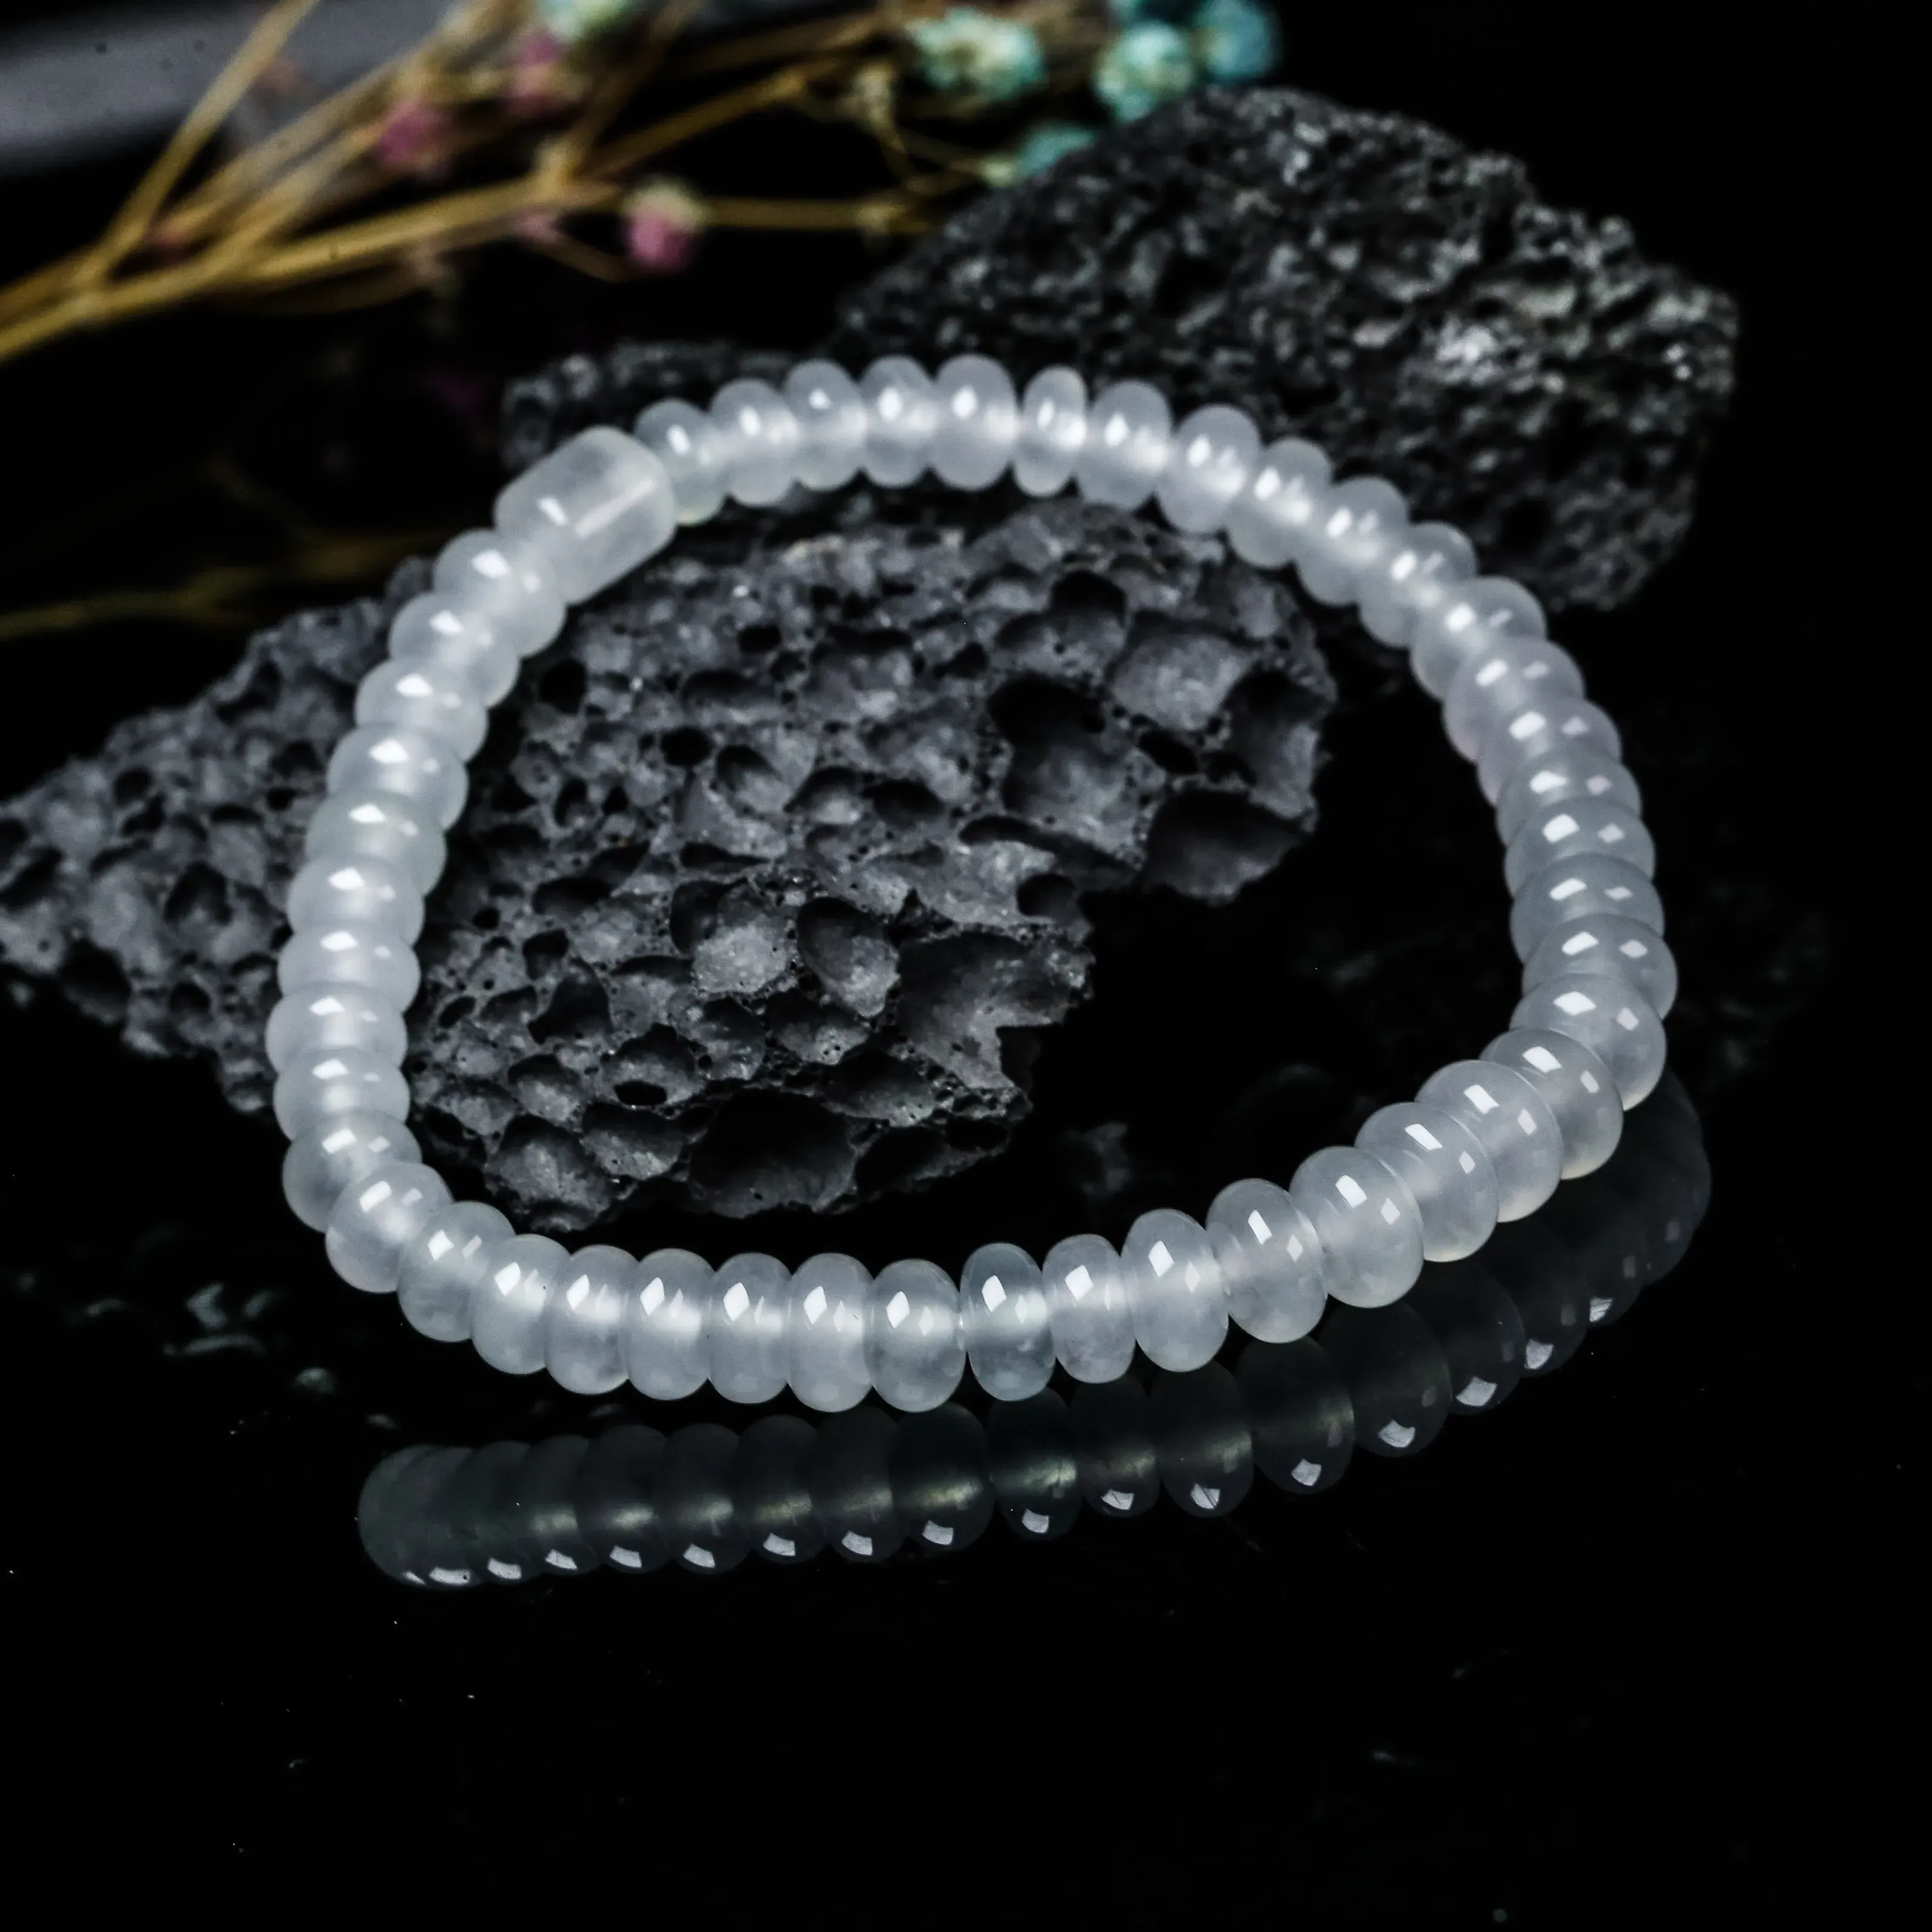 推荐冰种珠子翡翠手串。共46颗珠子，取其中一颗珠尺寸大约6.9*4mm，冰透水润，质地细腻。上手佩戴效果佳。